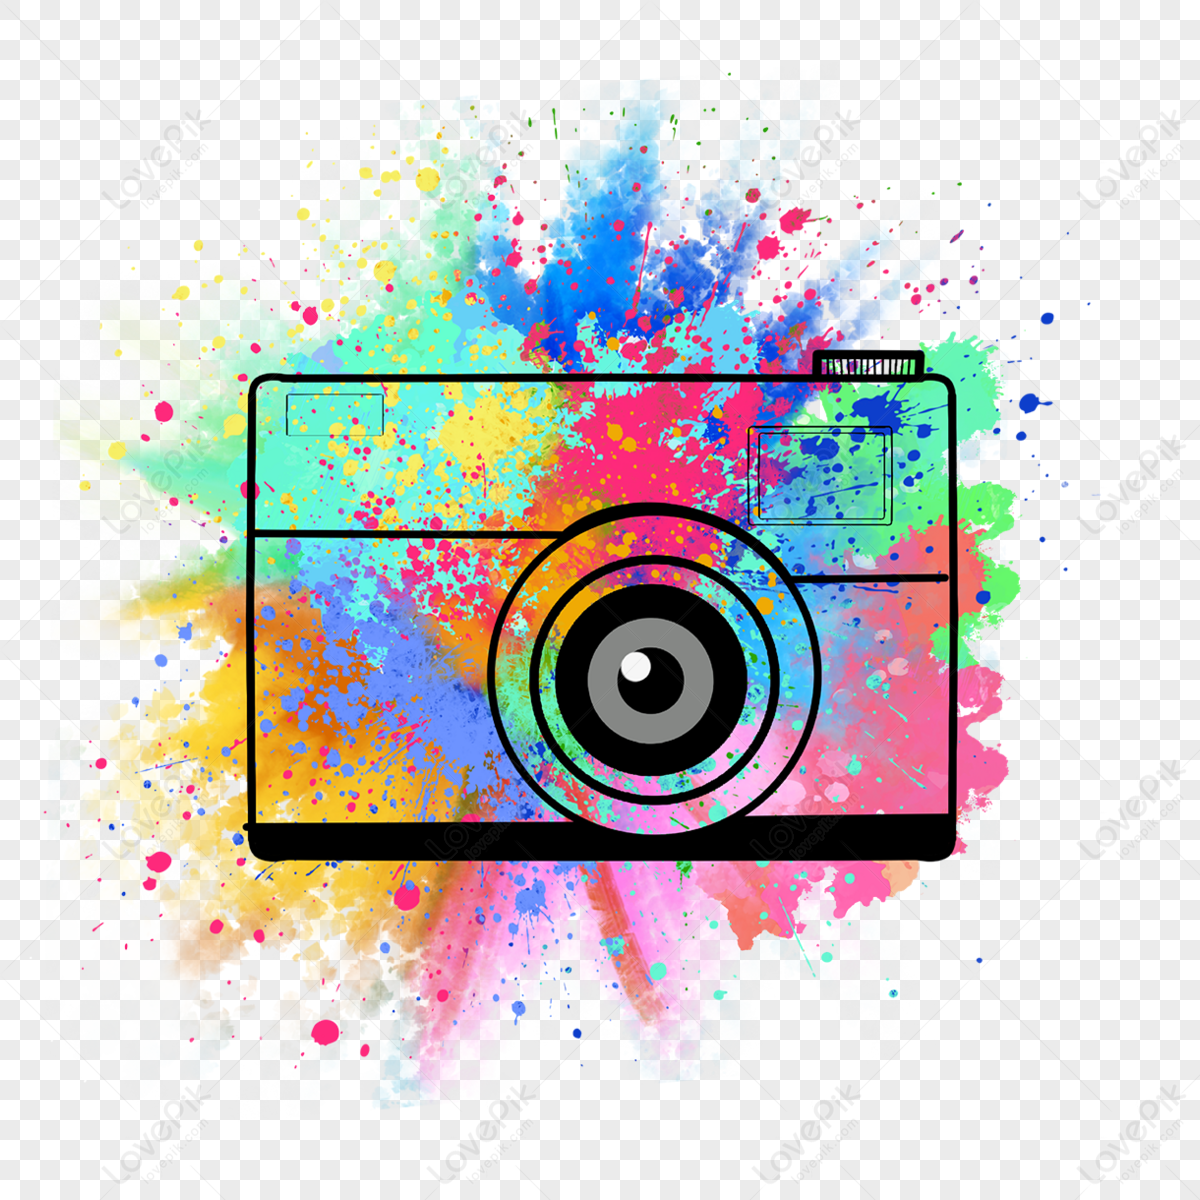 Ink Effect, Black Ink, Ink, Droplet Png Image And Clipart - Instagram  Splash Logo Png - 800x800 PNG Download - PNGkit